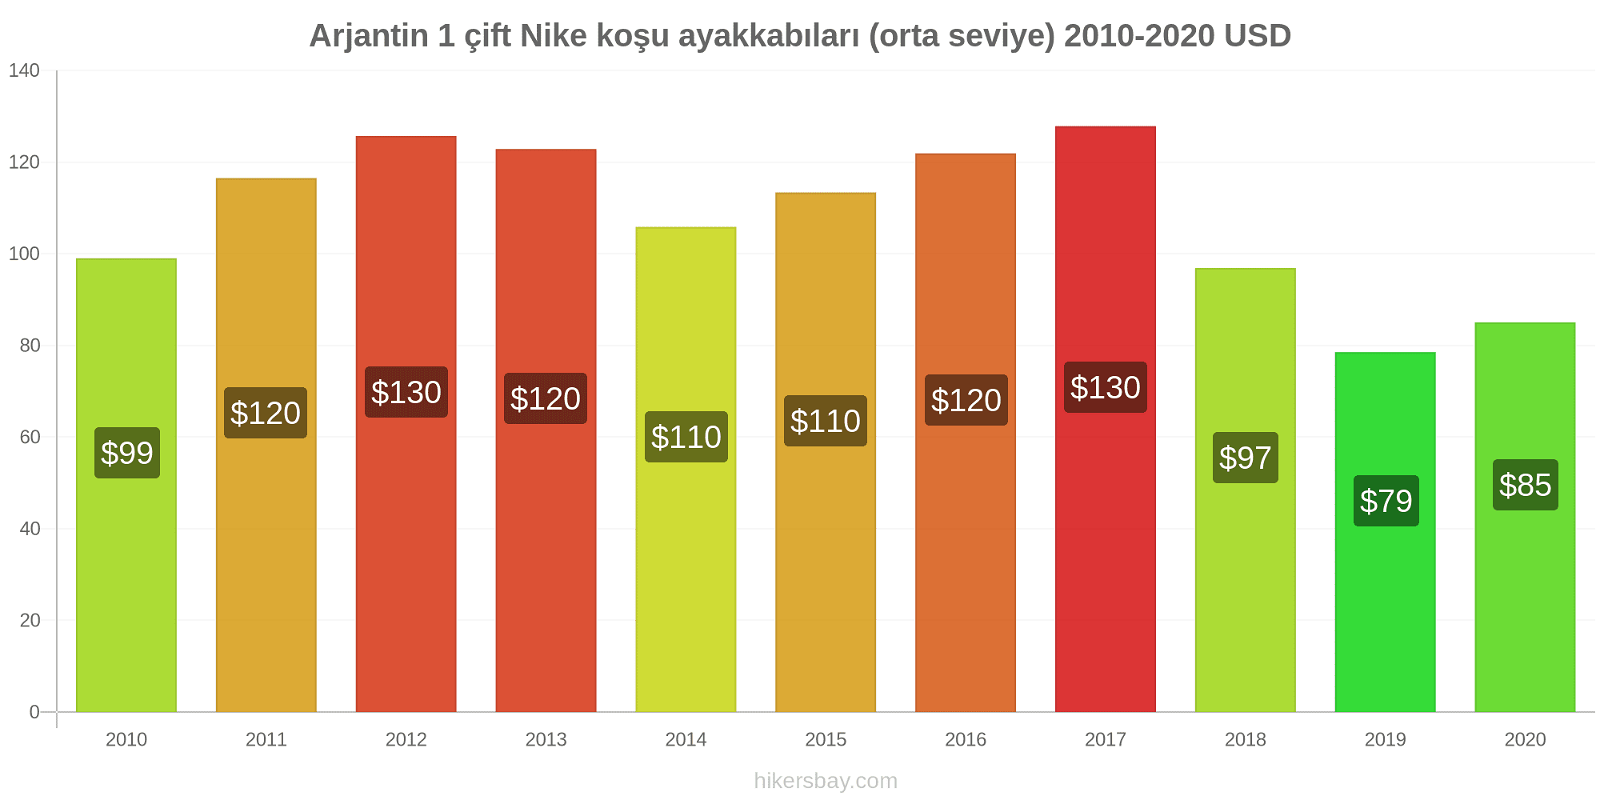 Arjantin fiyat değişiklikleri 1 çift Nike koşu ayakkabıları (orta seviye) hikersbay.com